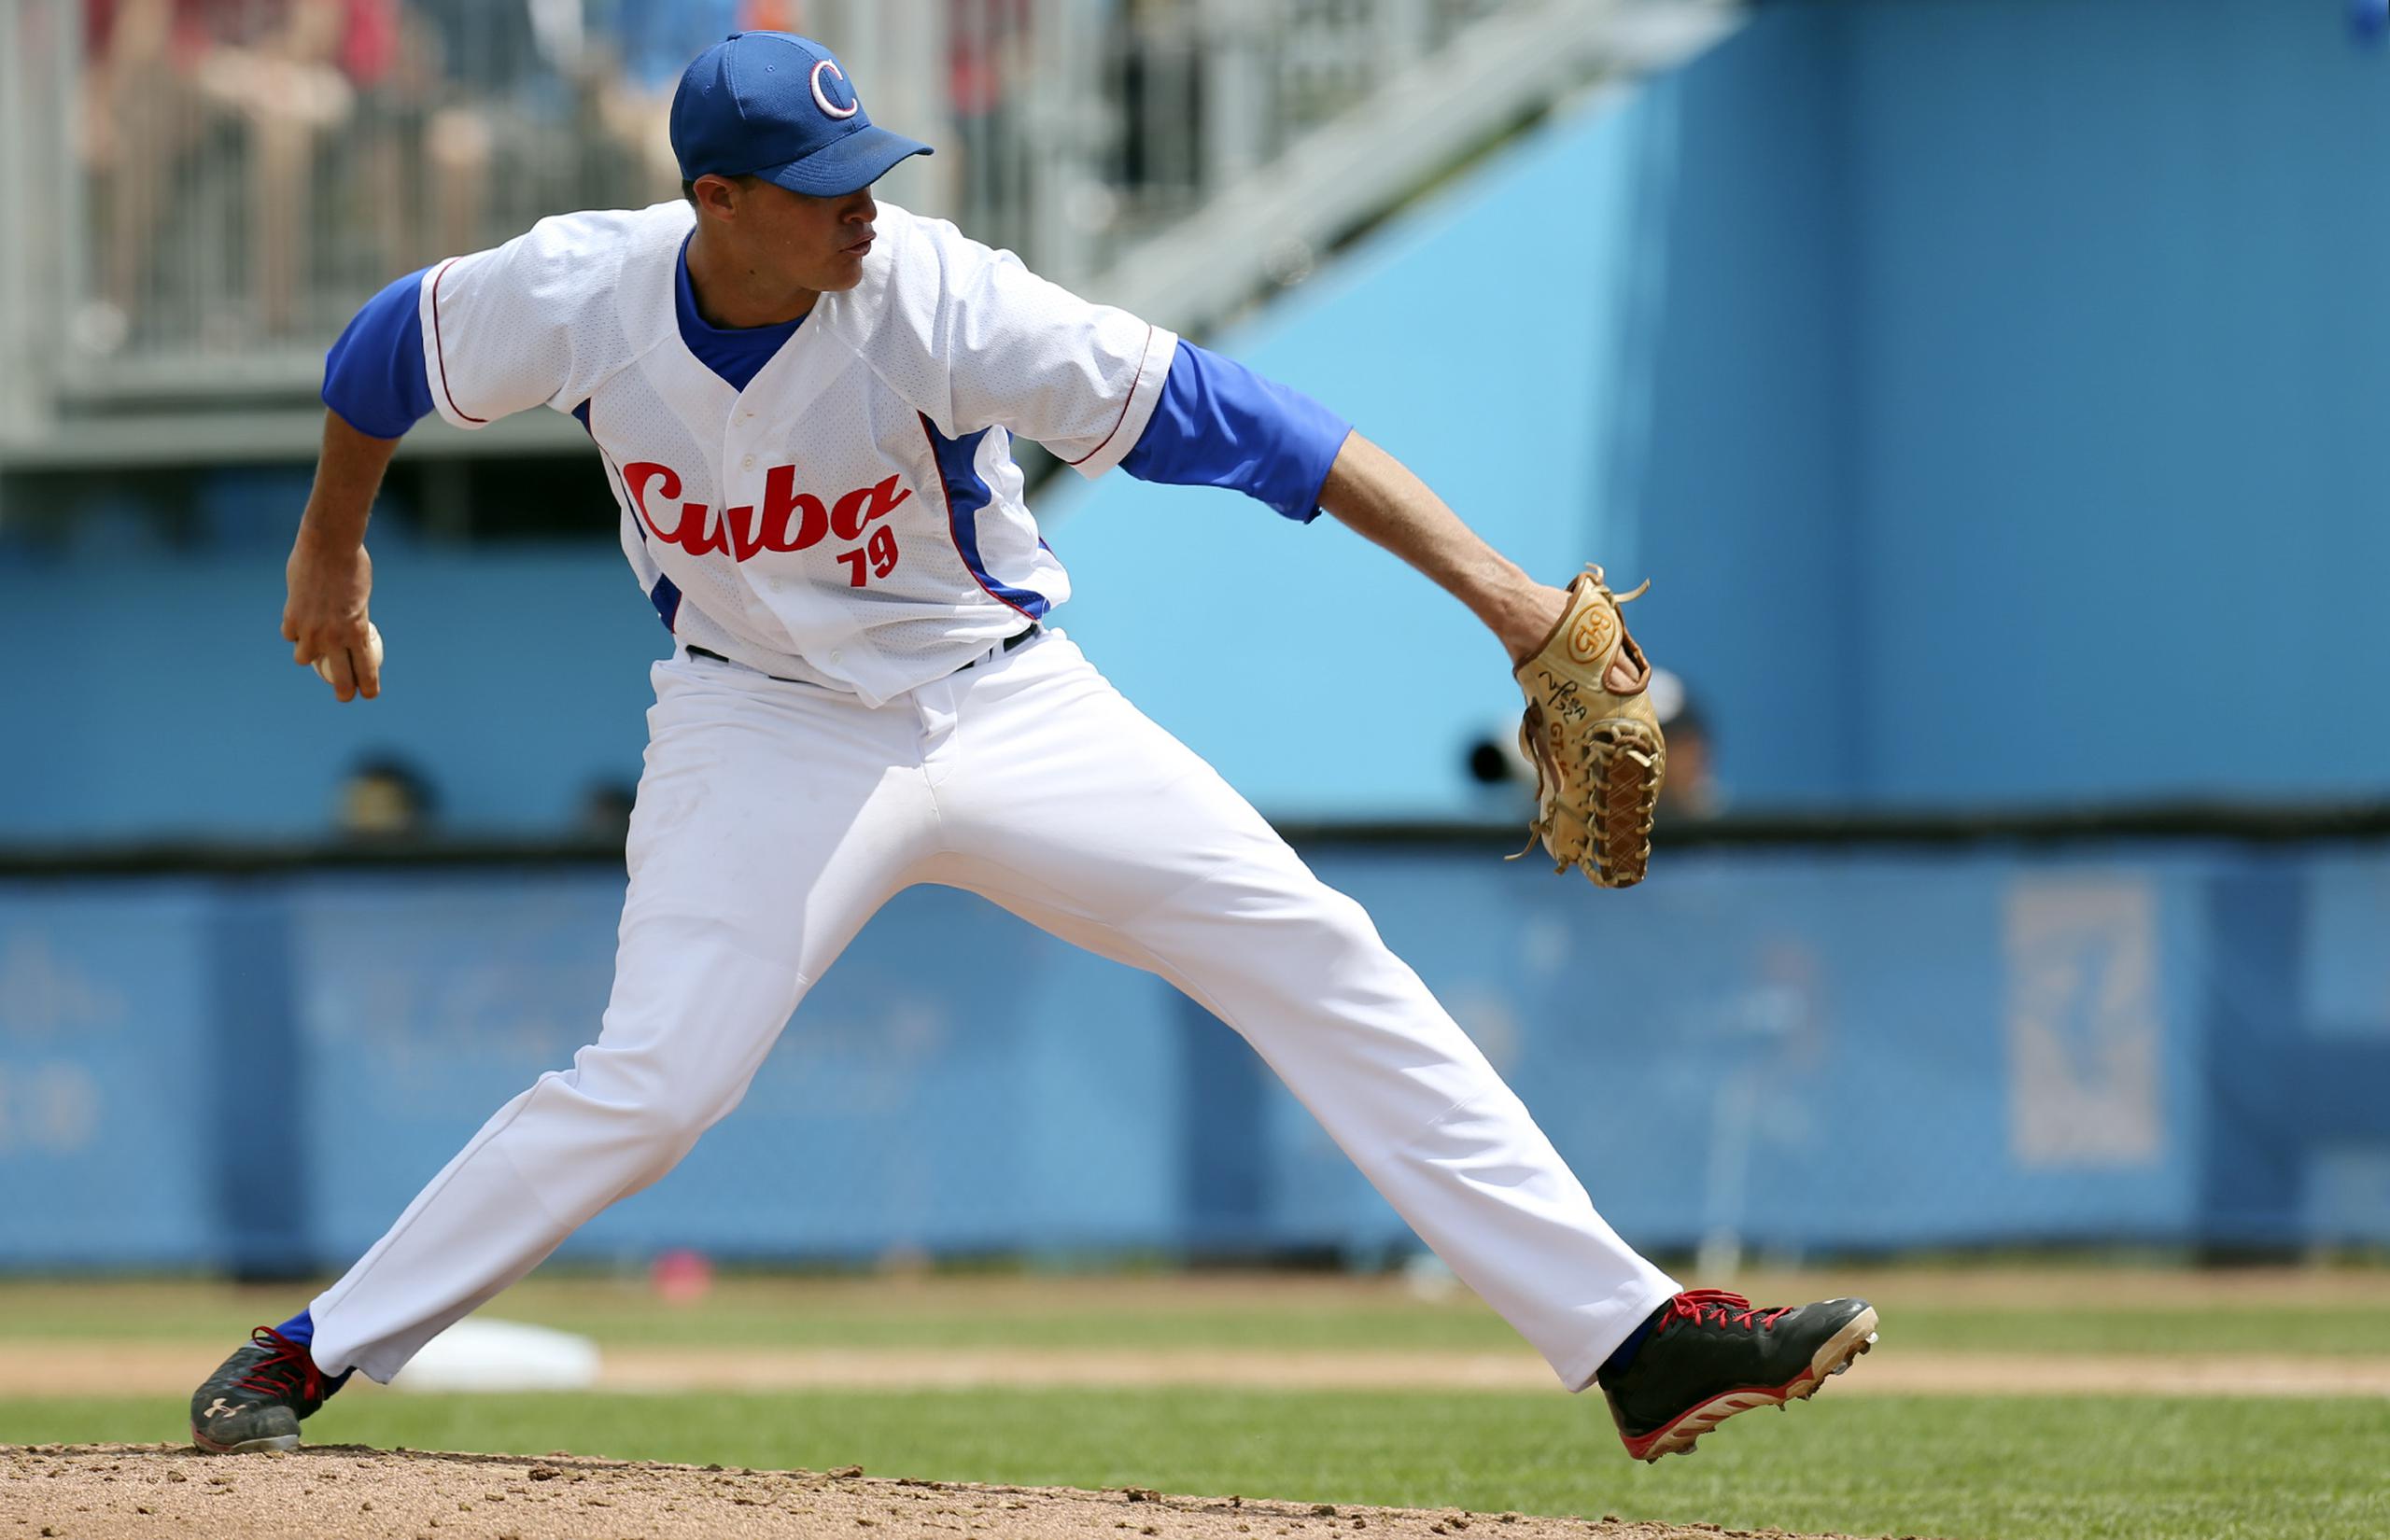 La selección cubana de béisbol recibió su visado para viajar a Estados Unidos apenas el martes, y a su llegada a Miami el miércoles, uno de sus integrantes desertó.